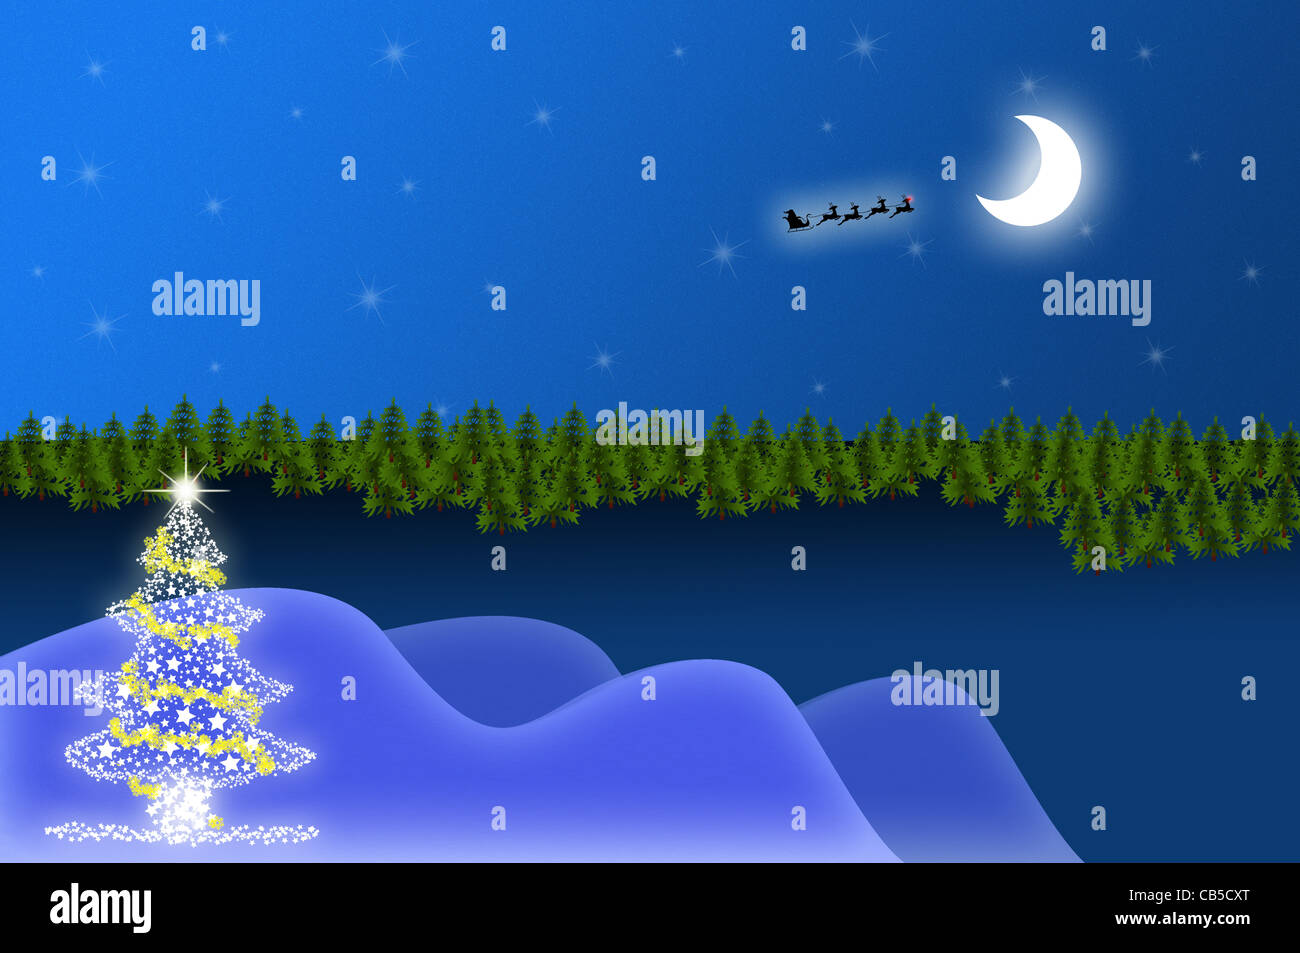 Weihnachtsbaum auf eine Landschaft mit Bäumen, Sterne, Mond und Santa mit ihren Schlitten Stockfoto